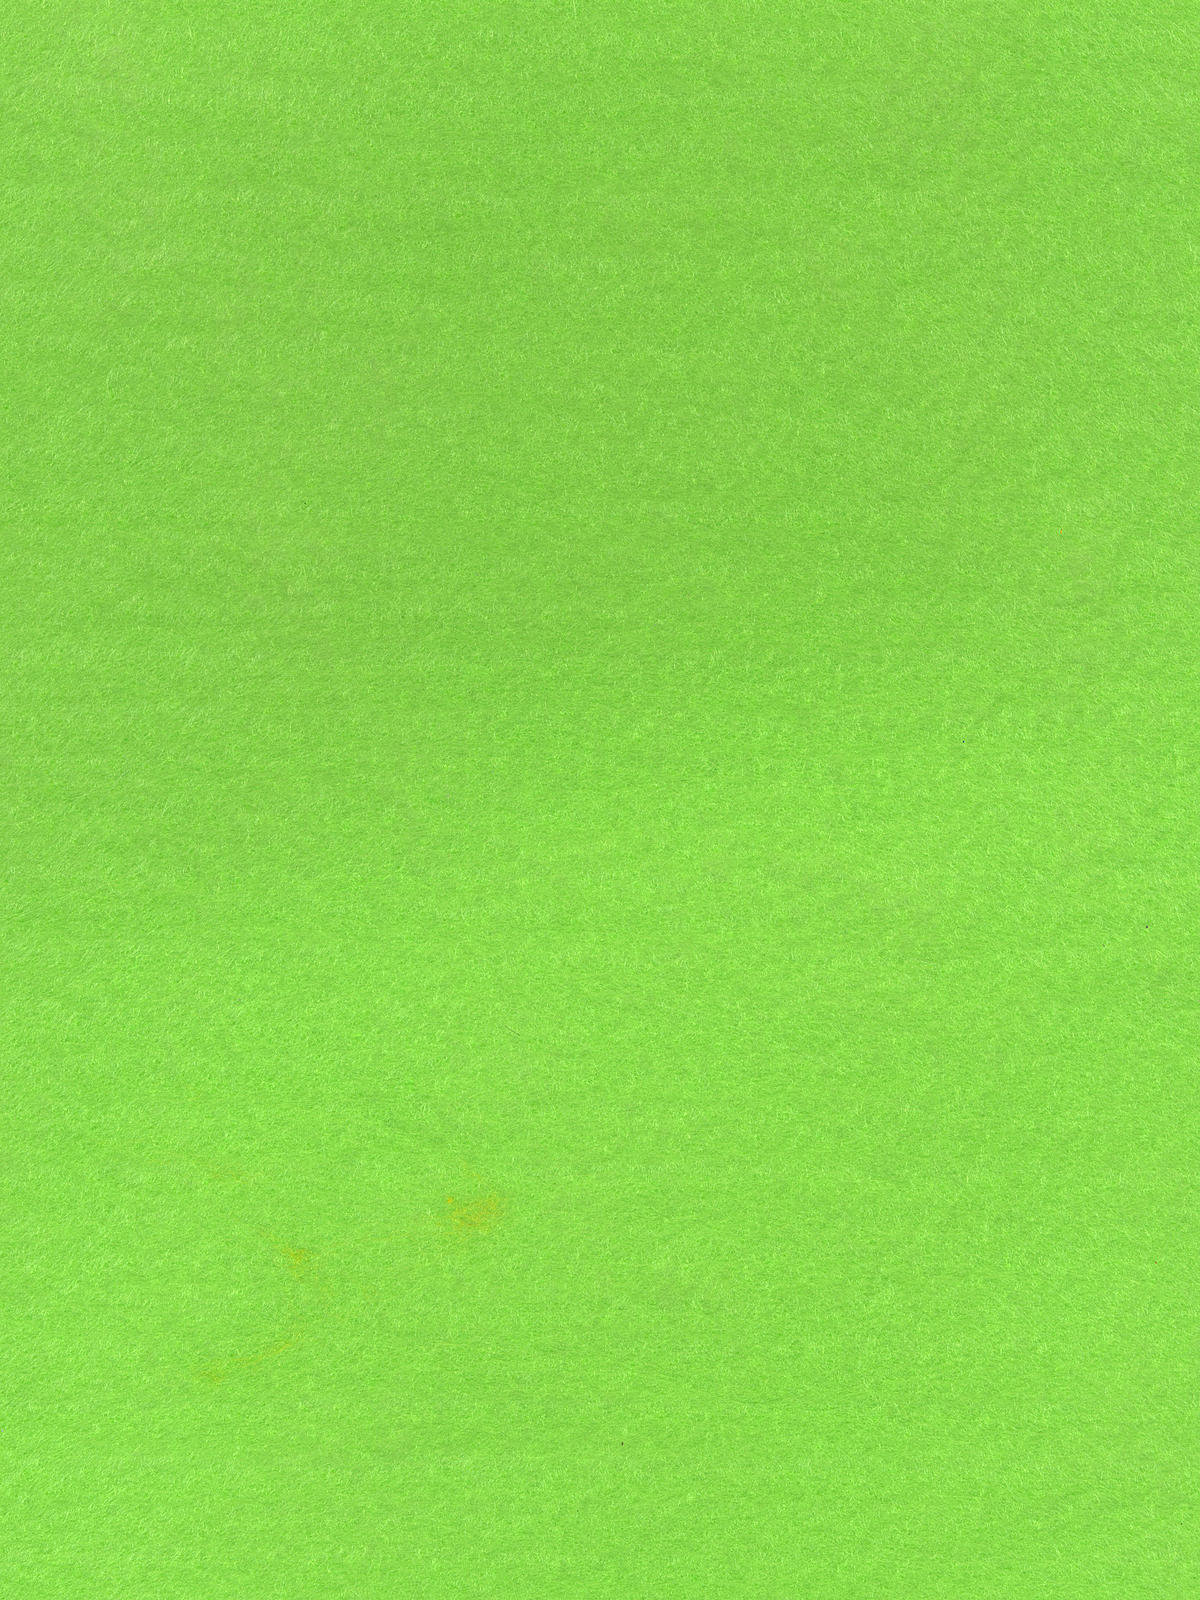 Prestofelt 9 In. X 12 In. Sheet Neon Green